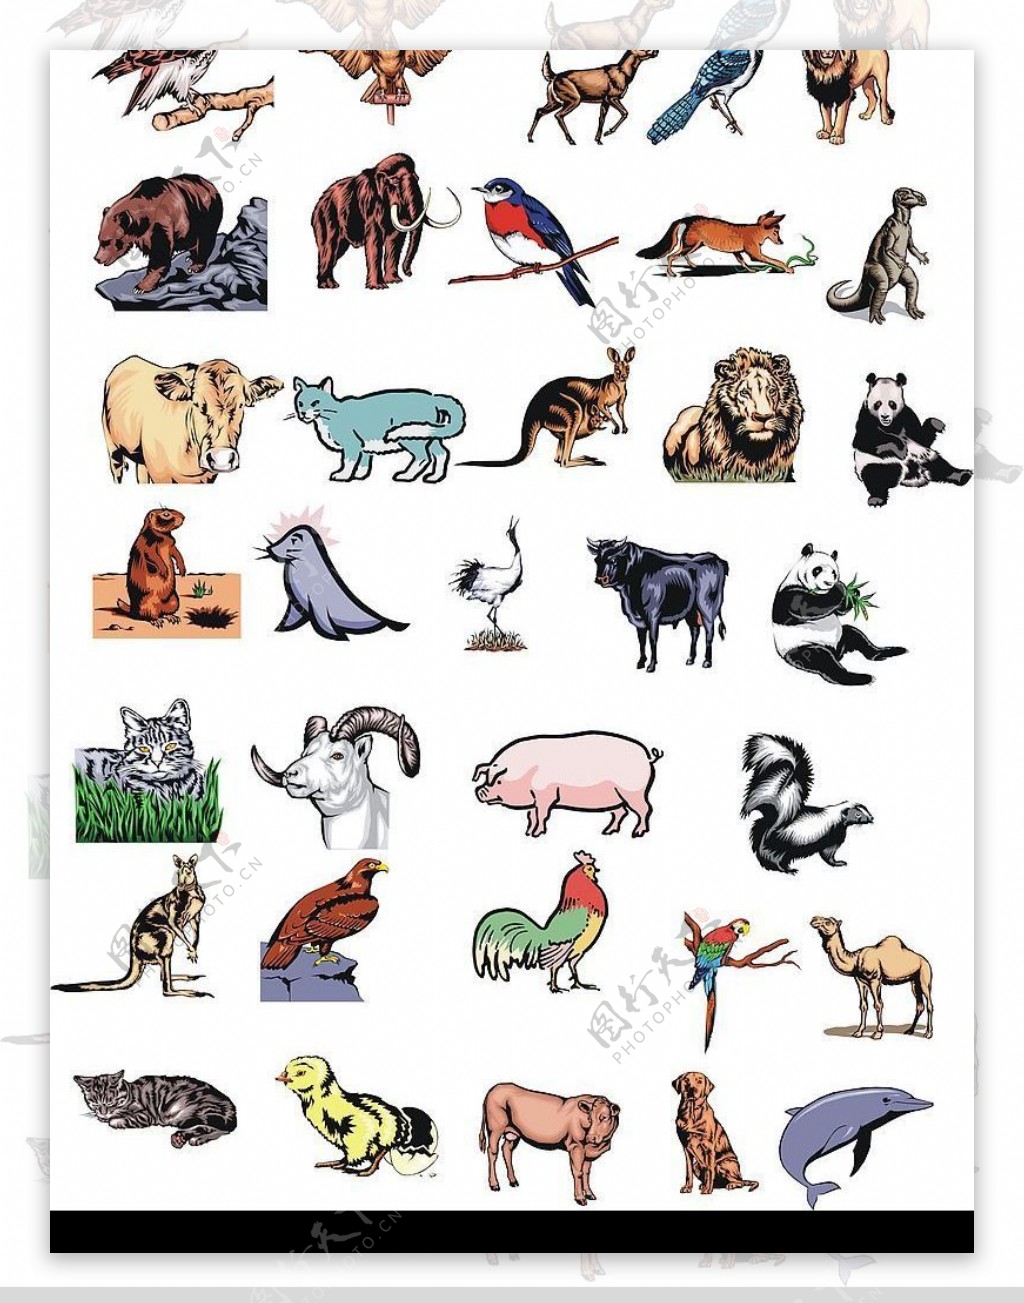 图片素材 : 性质, 野生动物, 动物园, 哺乳动物, 动物群, 灵长类动物, 马达加斯加, 脊椎动物, 狐猴, 有袋动物 3264x4928 ...